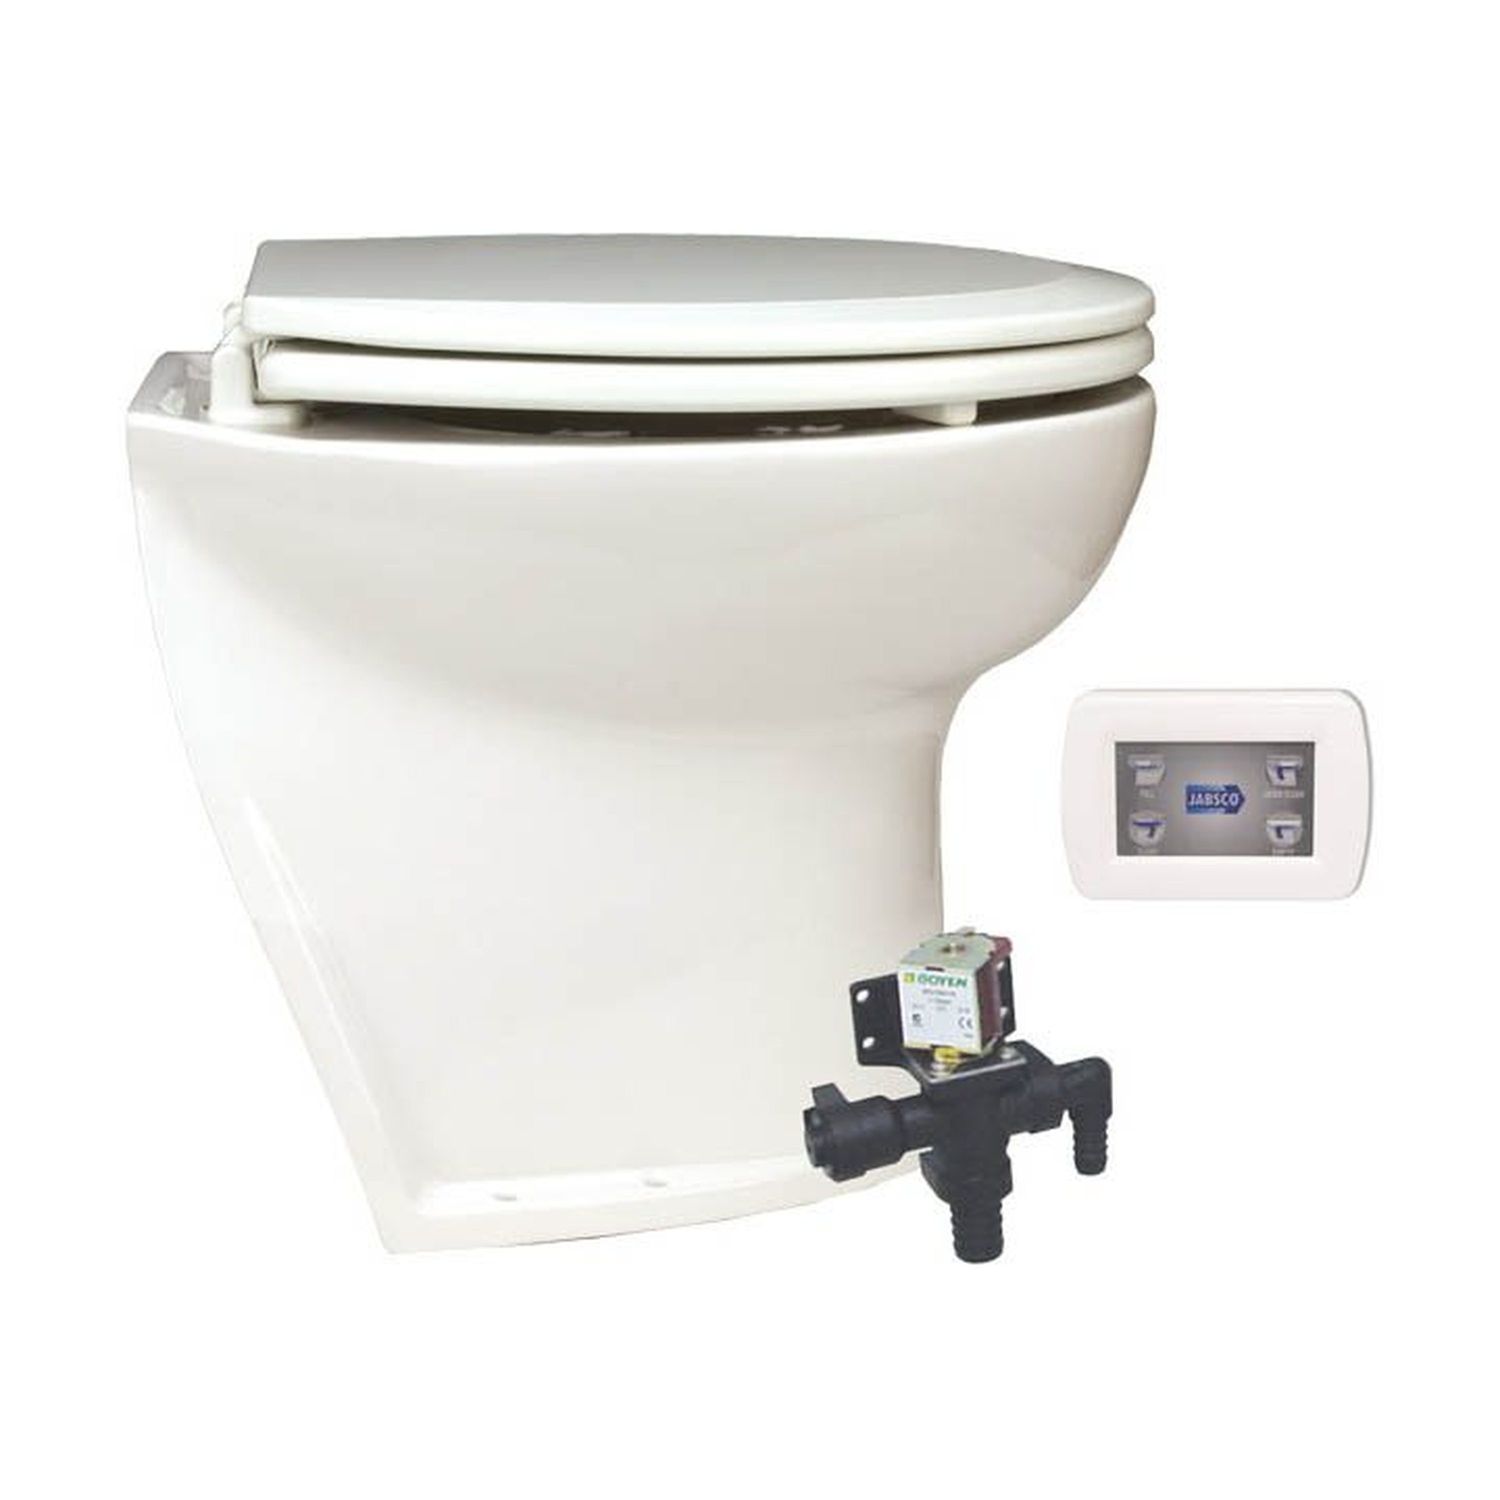 Jabsco El-toalett Deluxe Flush 14'', Vinklad, Pump 12v